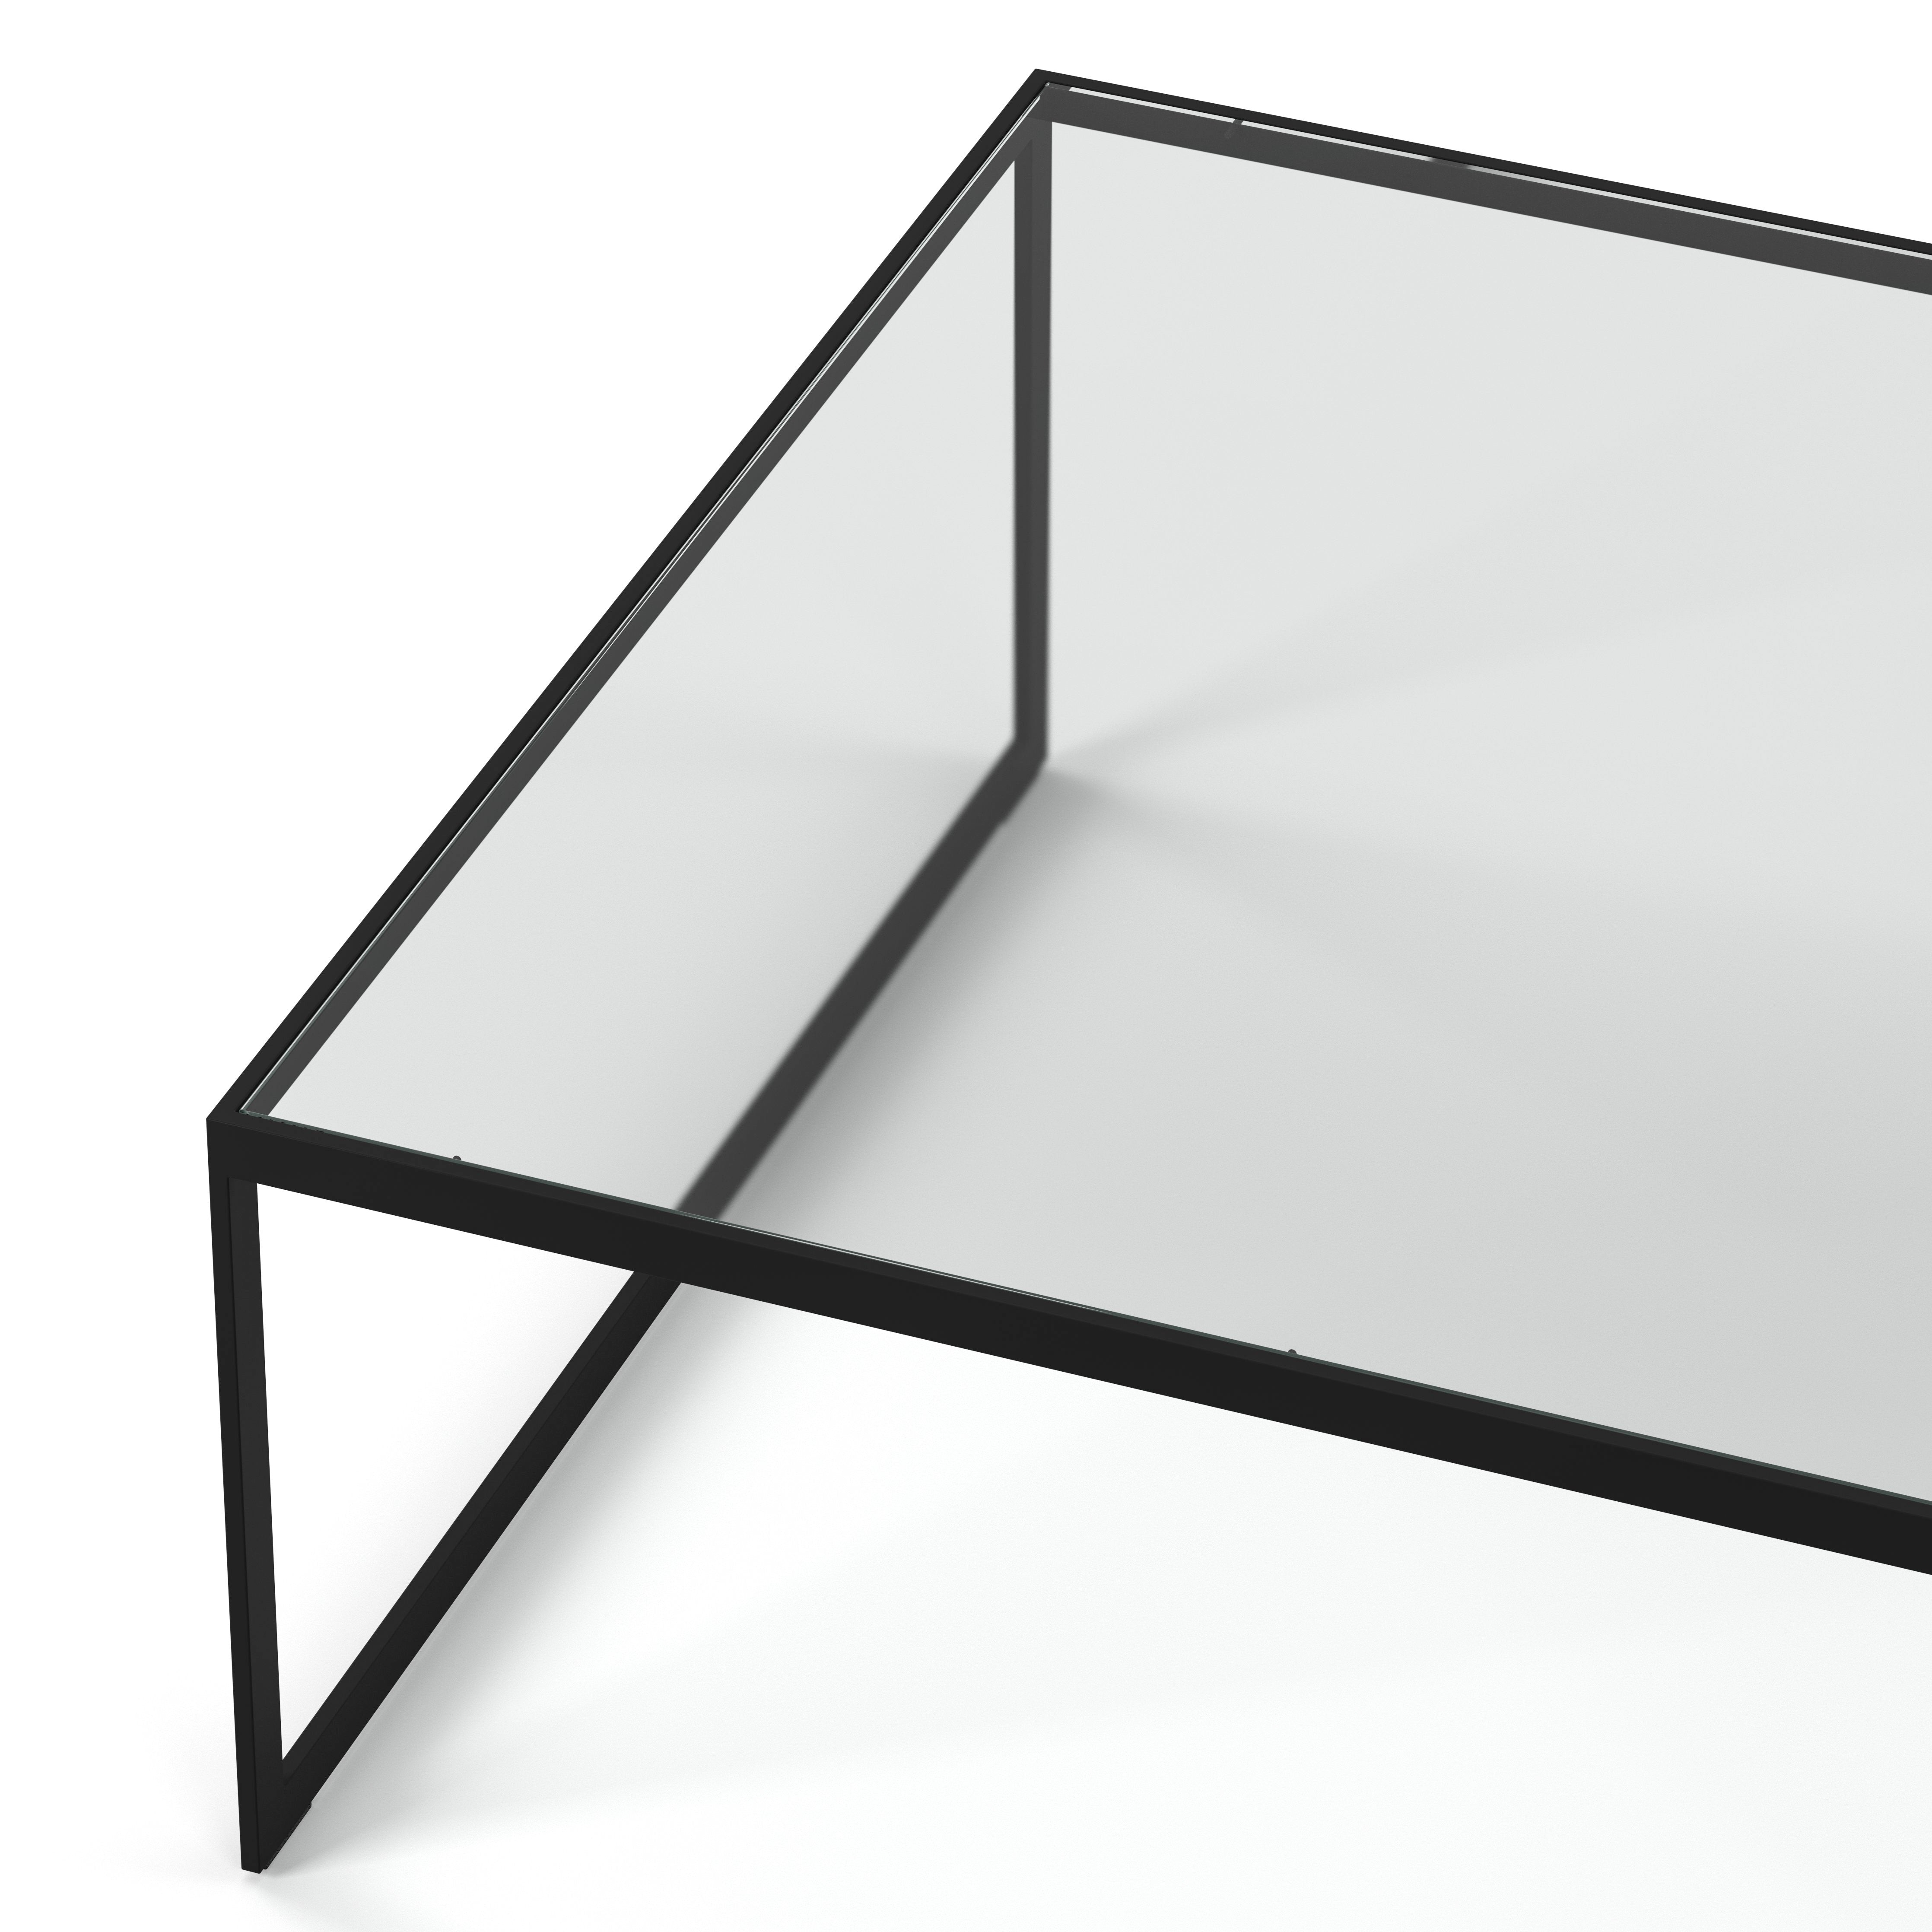 Englesson Bord Square Soffbord Kvadratiskt #färg_Svart Metall & Glas